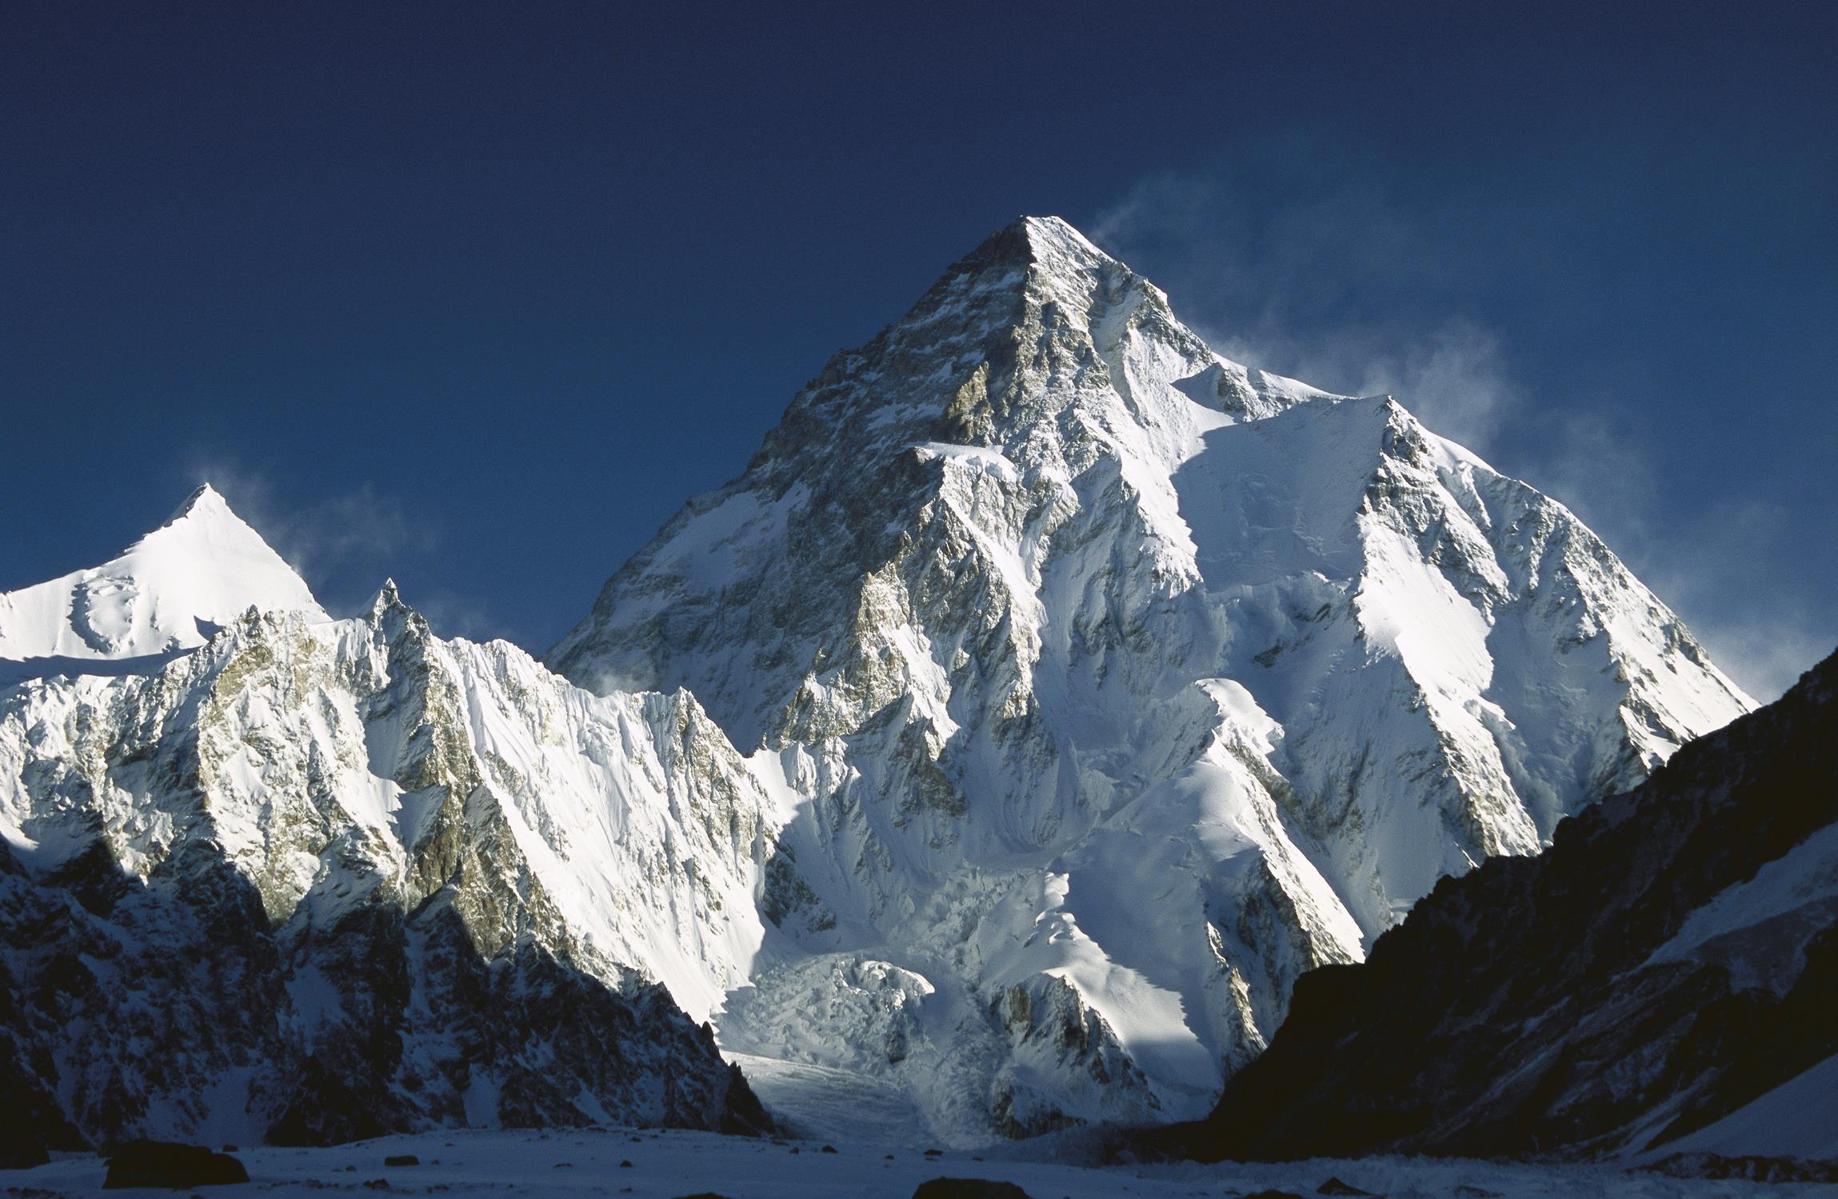 乔戈里山峰主要有6条山脊，西北一东南山脊为喀喇昆仑山脉主脊线，同时也是中国、巴基斯坦的国境线。峰额呈金字塔形，冰崖壁立，山势险峻。在陡峭的坡壁上布满了雪崩的溜槽痕迹。垂直高差竞达4700米，是世界上8000米以上高峰垂直高差最大的山峰。